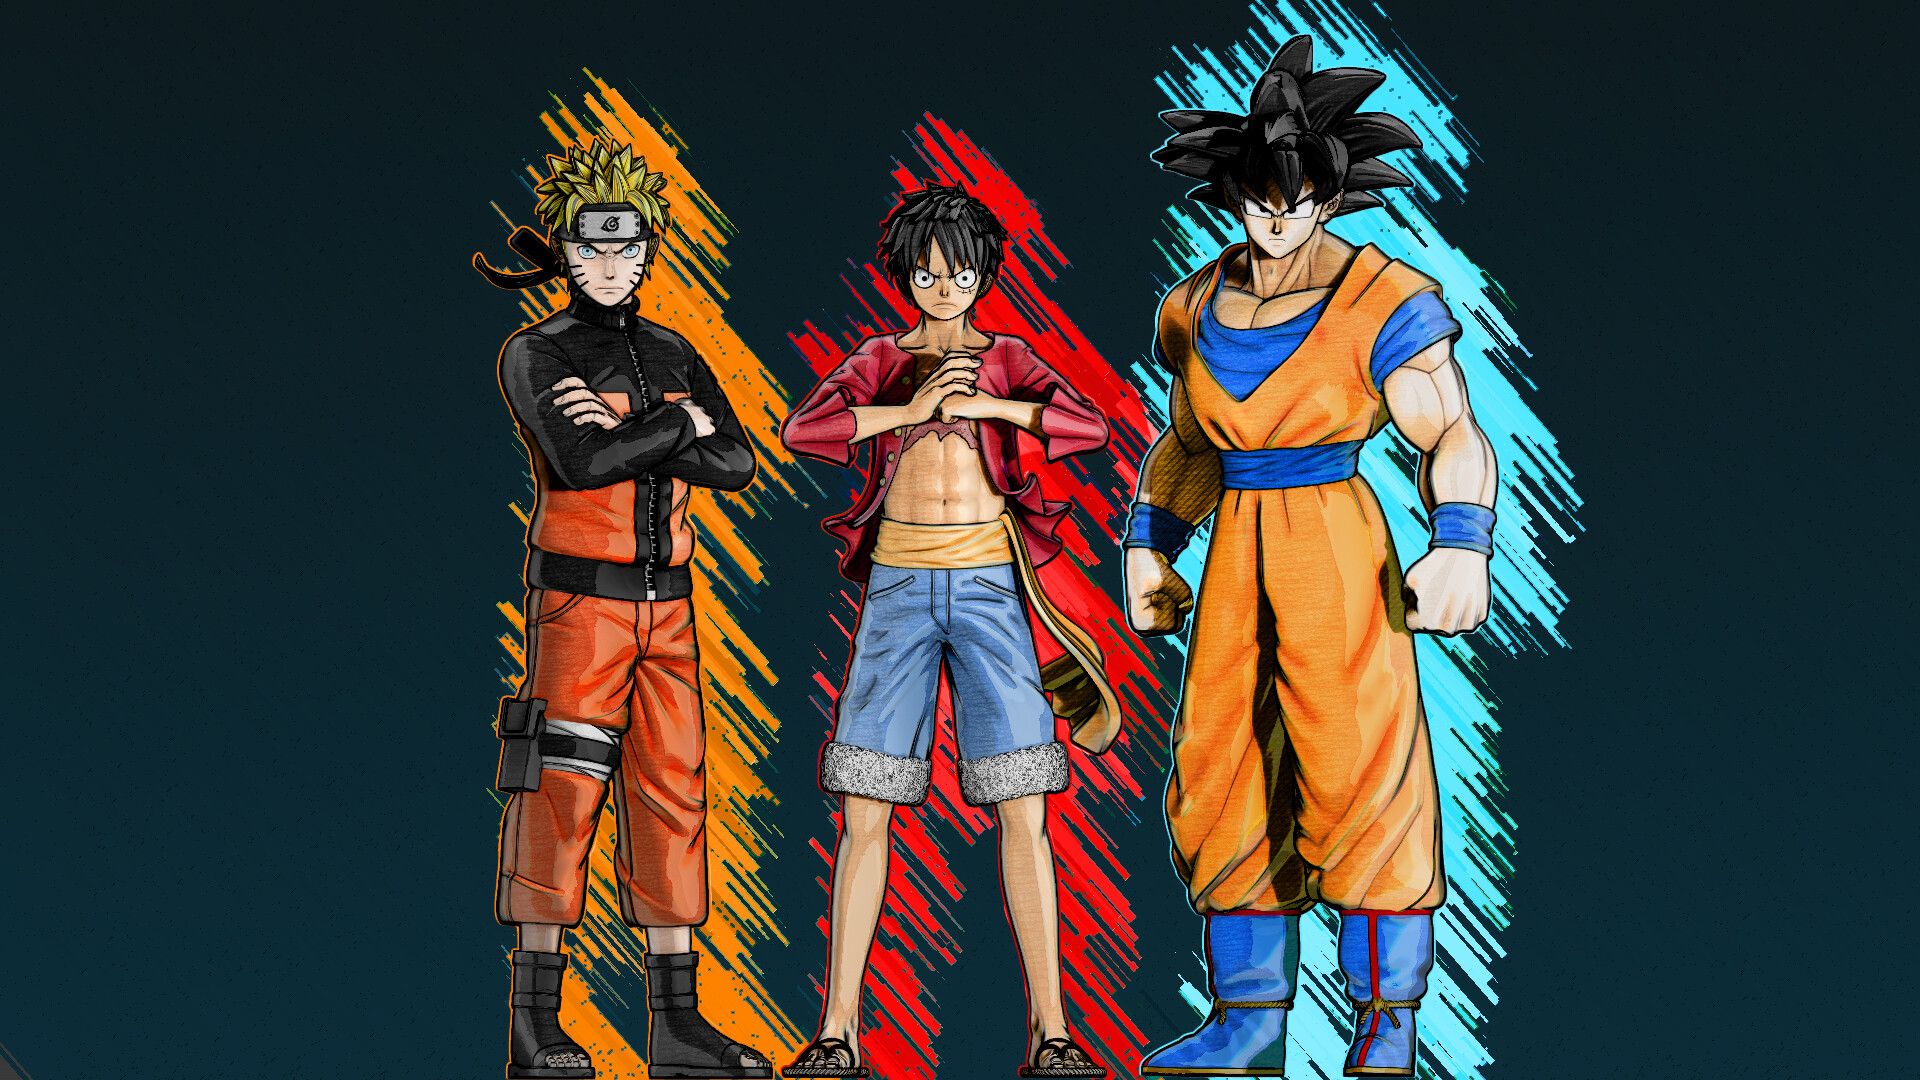 Goku Luffy Naruto Wallpaper